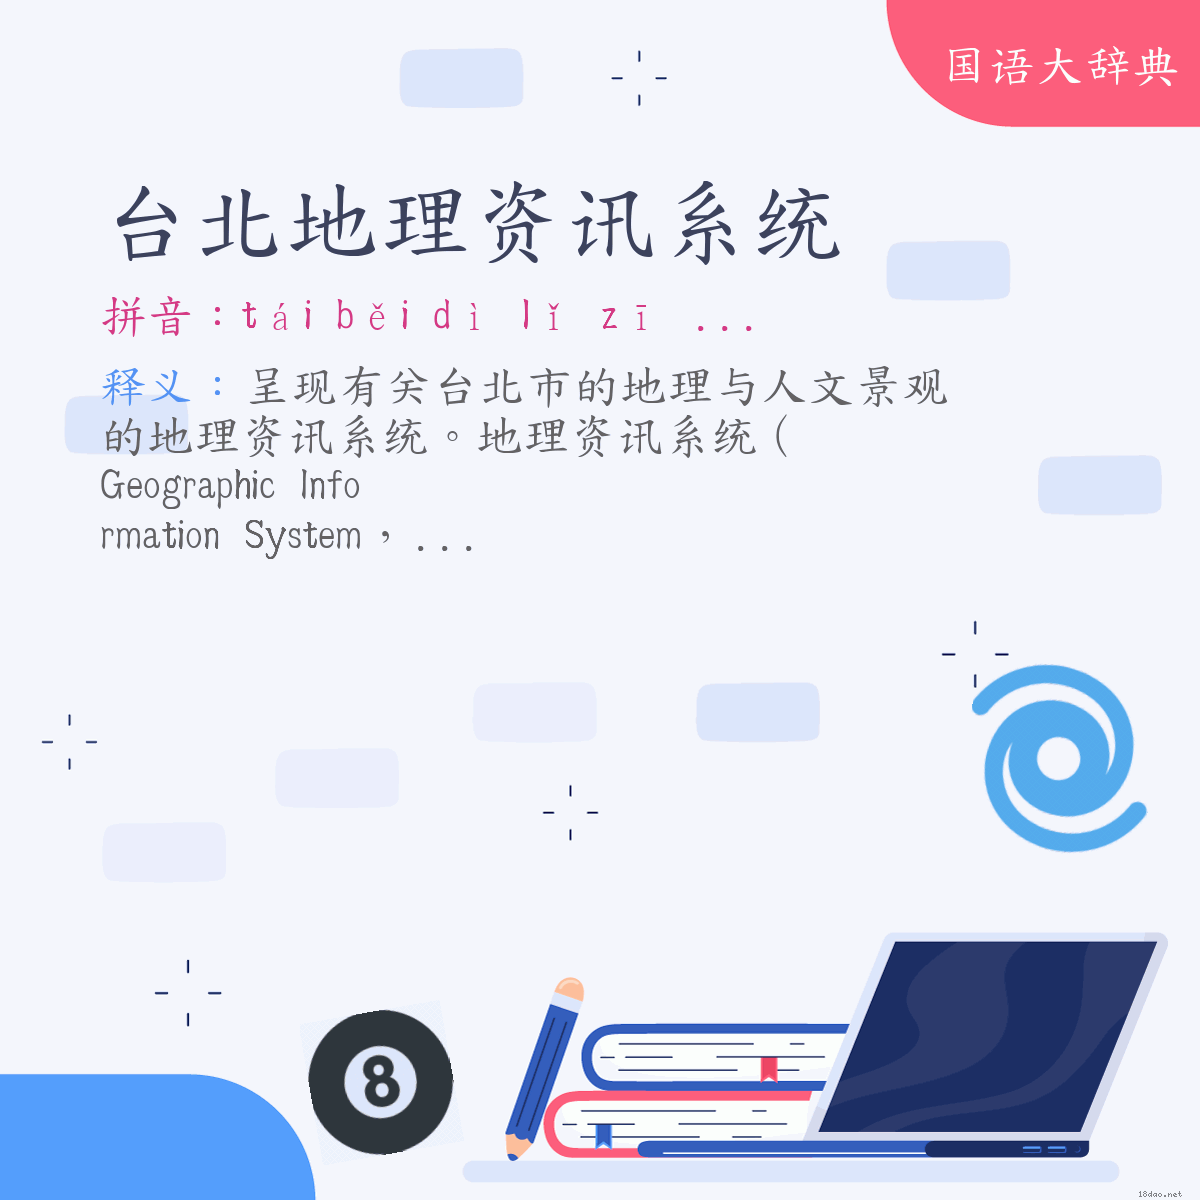 词语:台北地理资讯系统 (注音:ㄊㄞˊ　ㄅㄟˇ　ㄉㄧˋ　ㄌㄧˇ　ㄗ　ㄒㄩㄣˋ　ㄒㄧˋ　ㄊㄨㄥˇ)